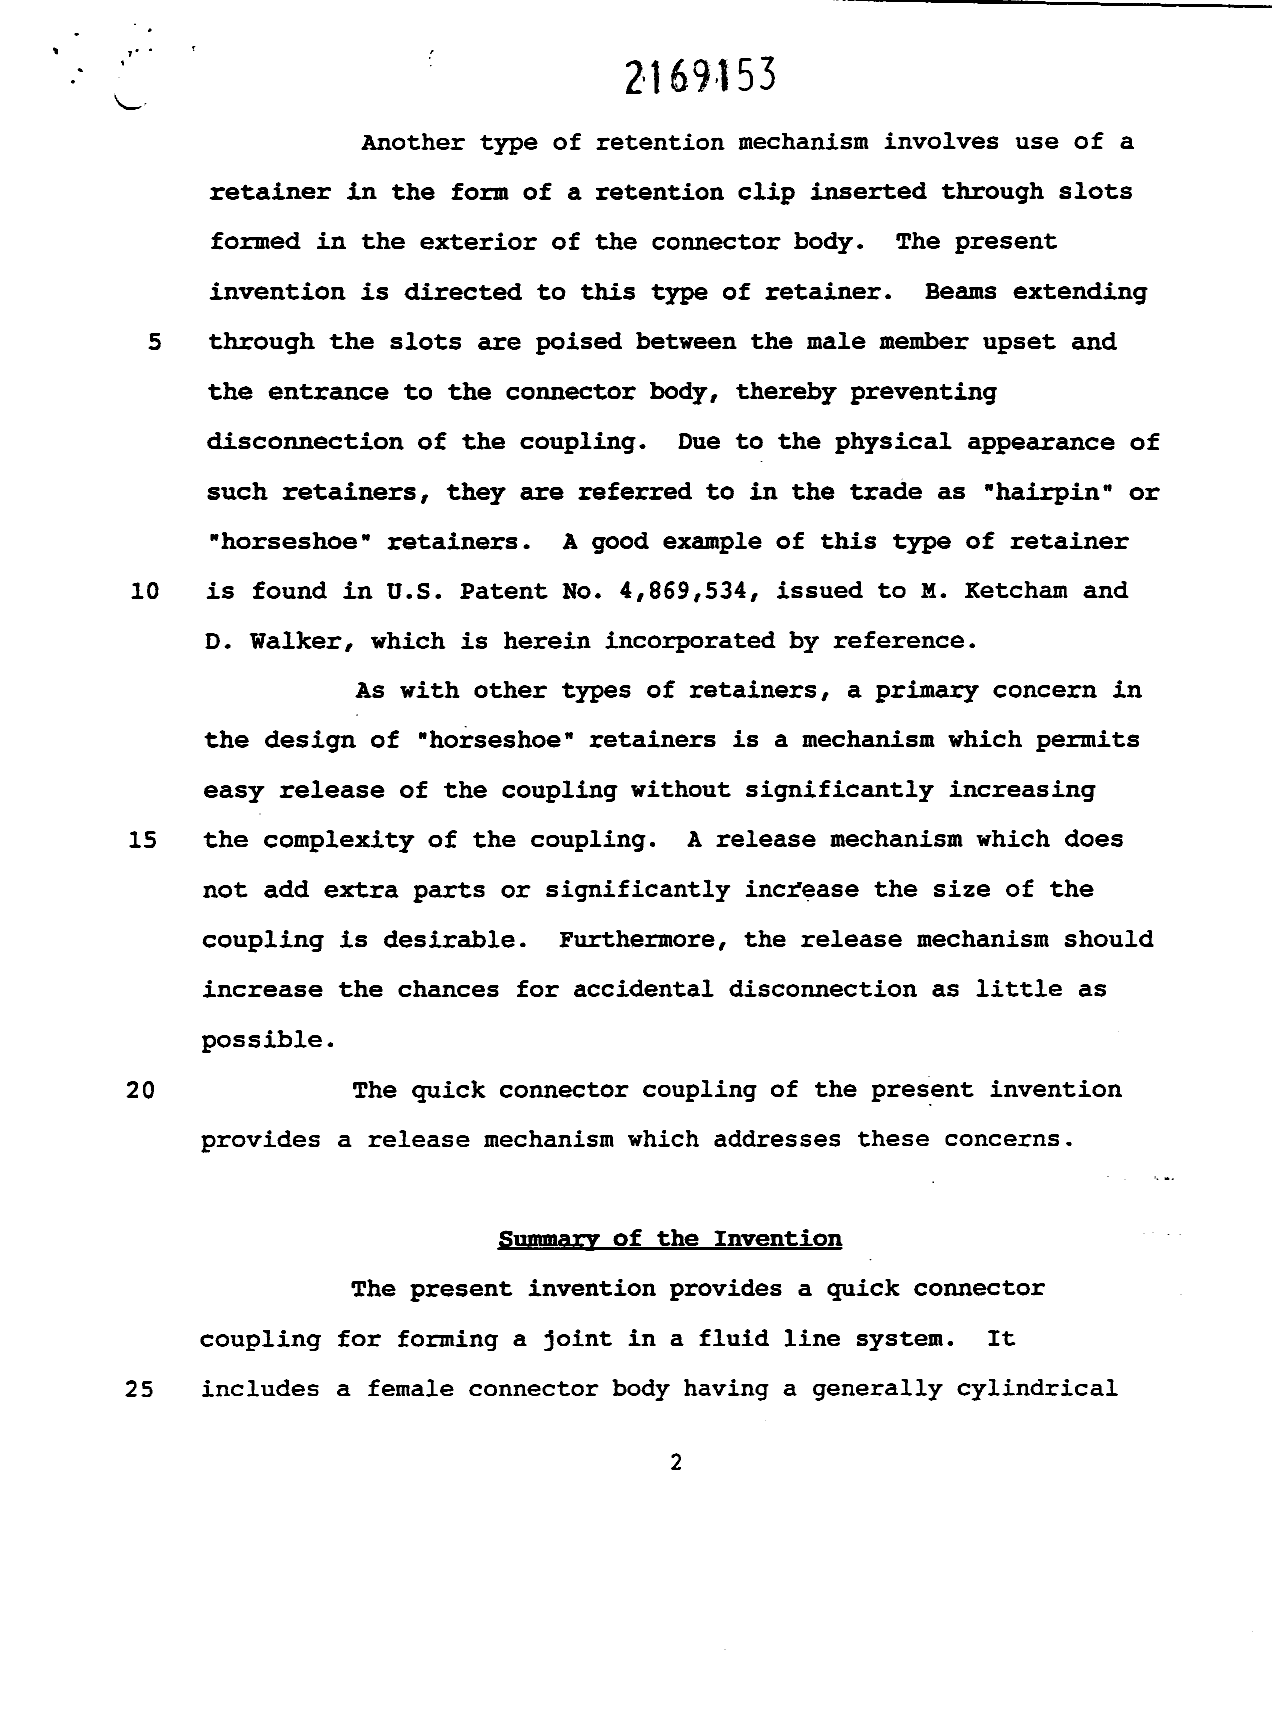 Canadian Patent Document 2169153. Description 19960529. Image 2 of 16